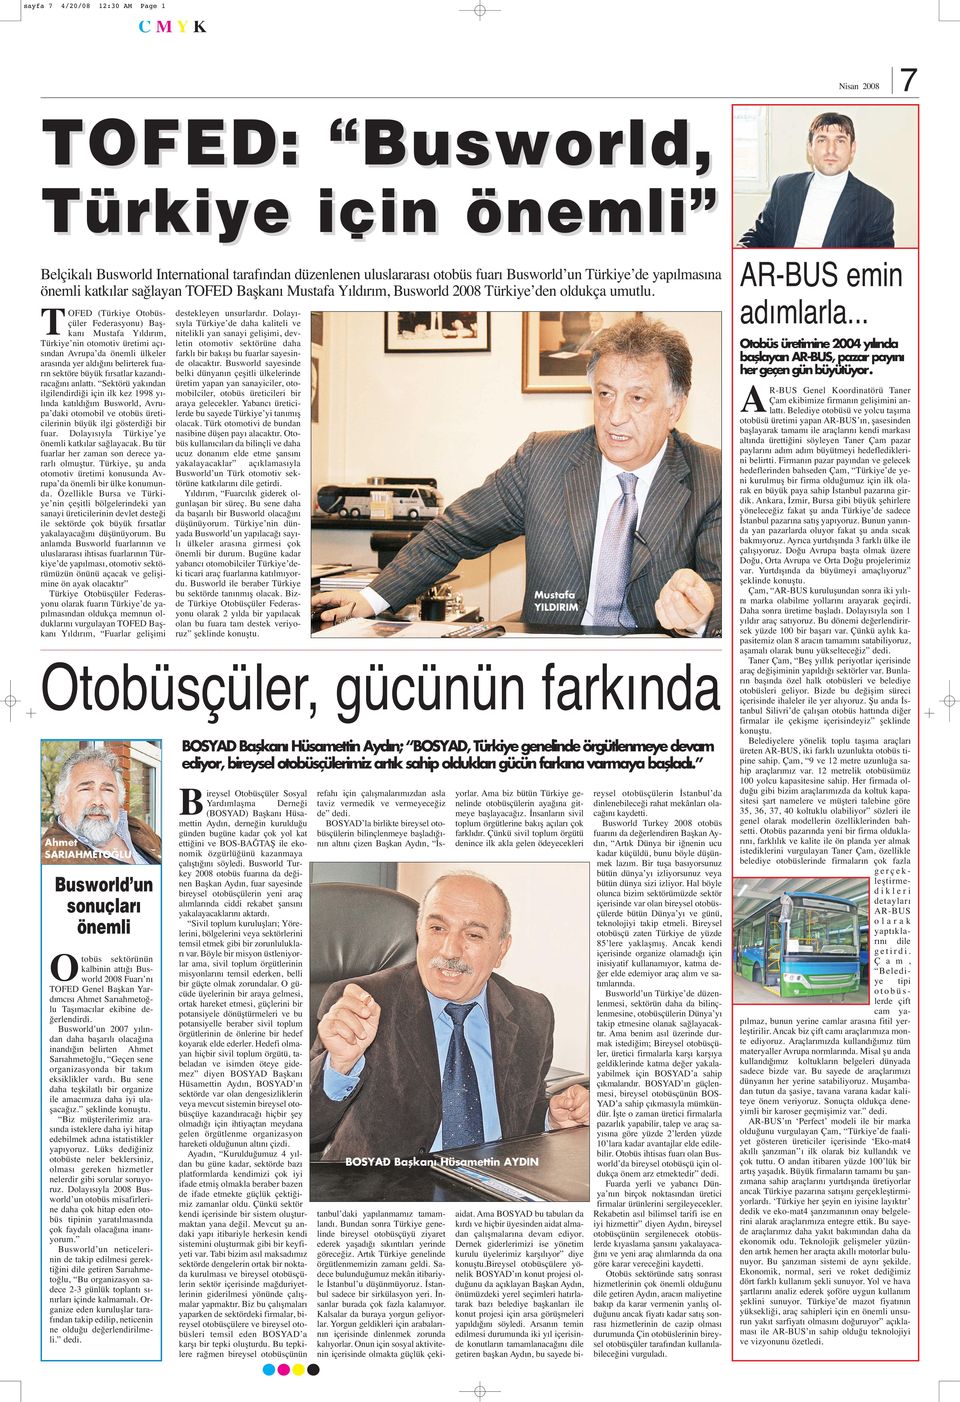 TOFED (Türkiye Otobüsçüler Federasyonu) Başkanı Mustafa Yıldırım, Türkiye nin otomotiv üretimi açısından Avrupa da önemli ülkeler arasında yer aldığını belirterek fuarın sektöre büyük fırsatlar